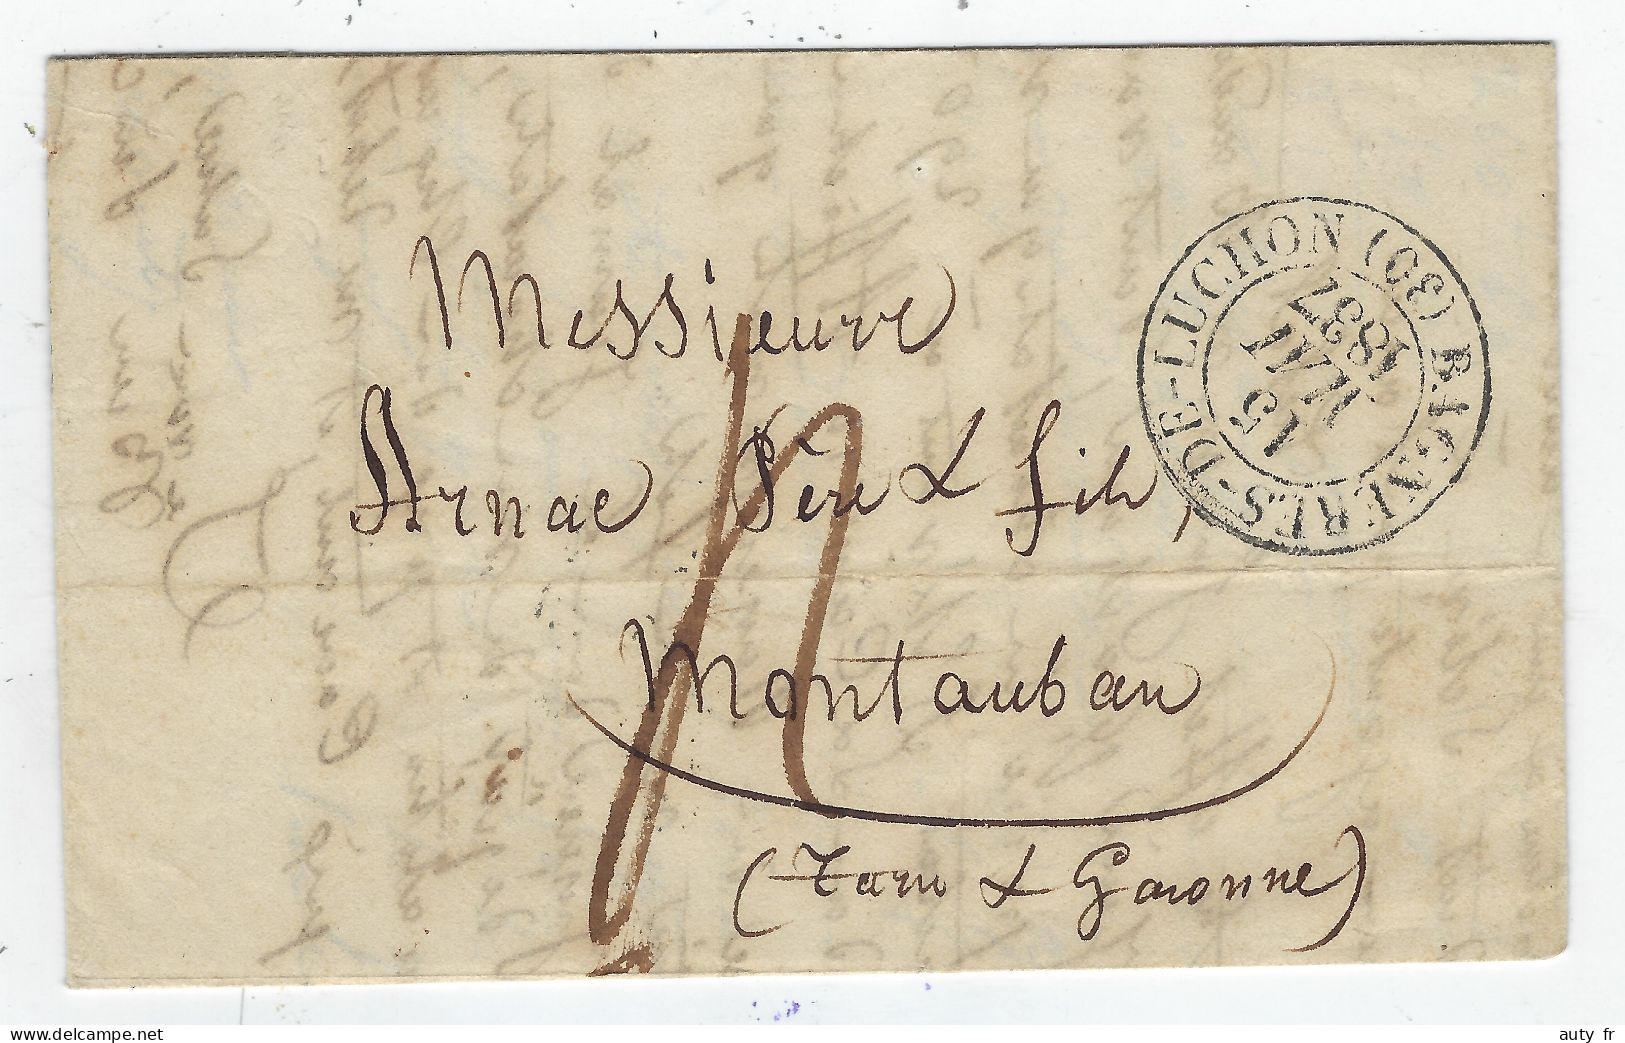 Lettre De BAGNERES DE LUCHON Pour Montauban - CAD Type 13 - 1837 - Texte Citant La Voiture Chargée De L'expédition - 1801-1848: Precursors XIX